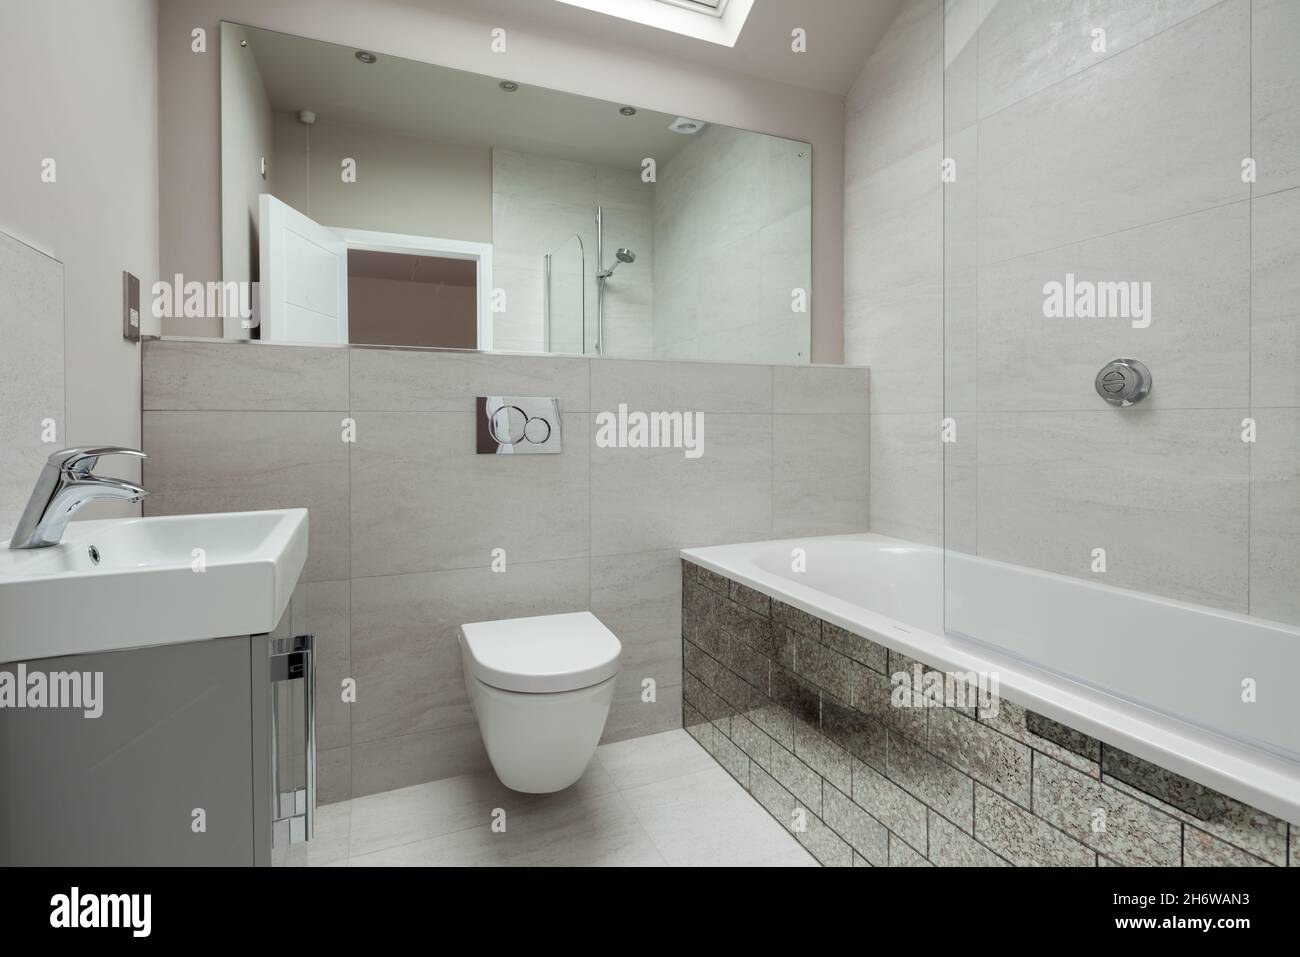 Cambridge, Angleterre - août 16 2019: Moderne refaite salle de bain luxueuse suite dans la maison britannique rénovée et vacante Banque D'Images